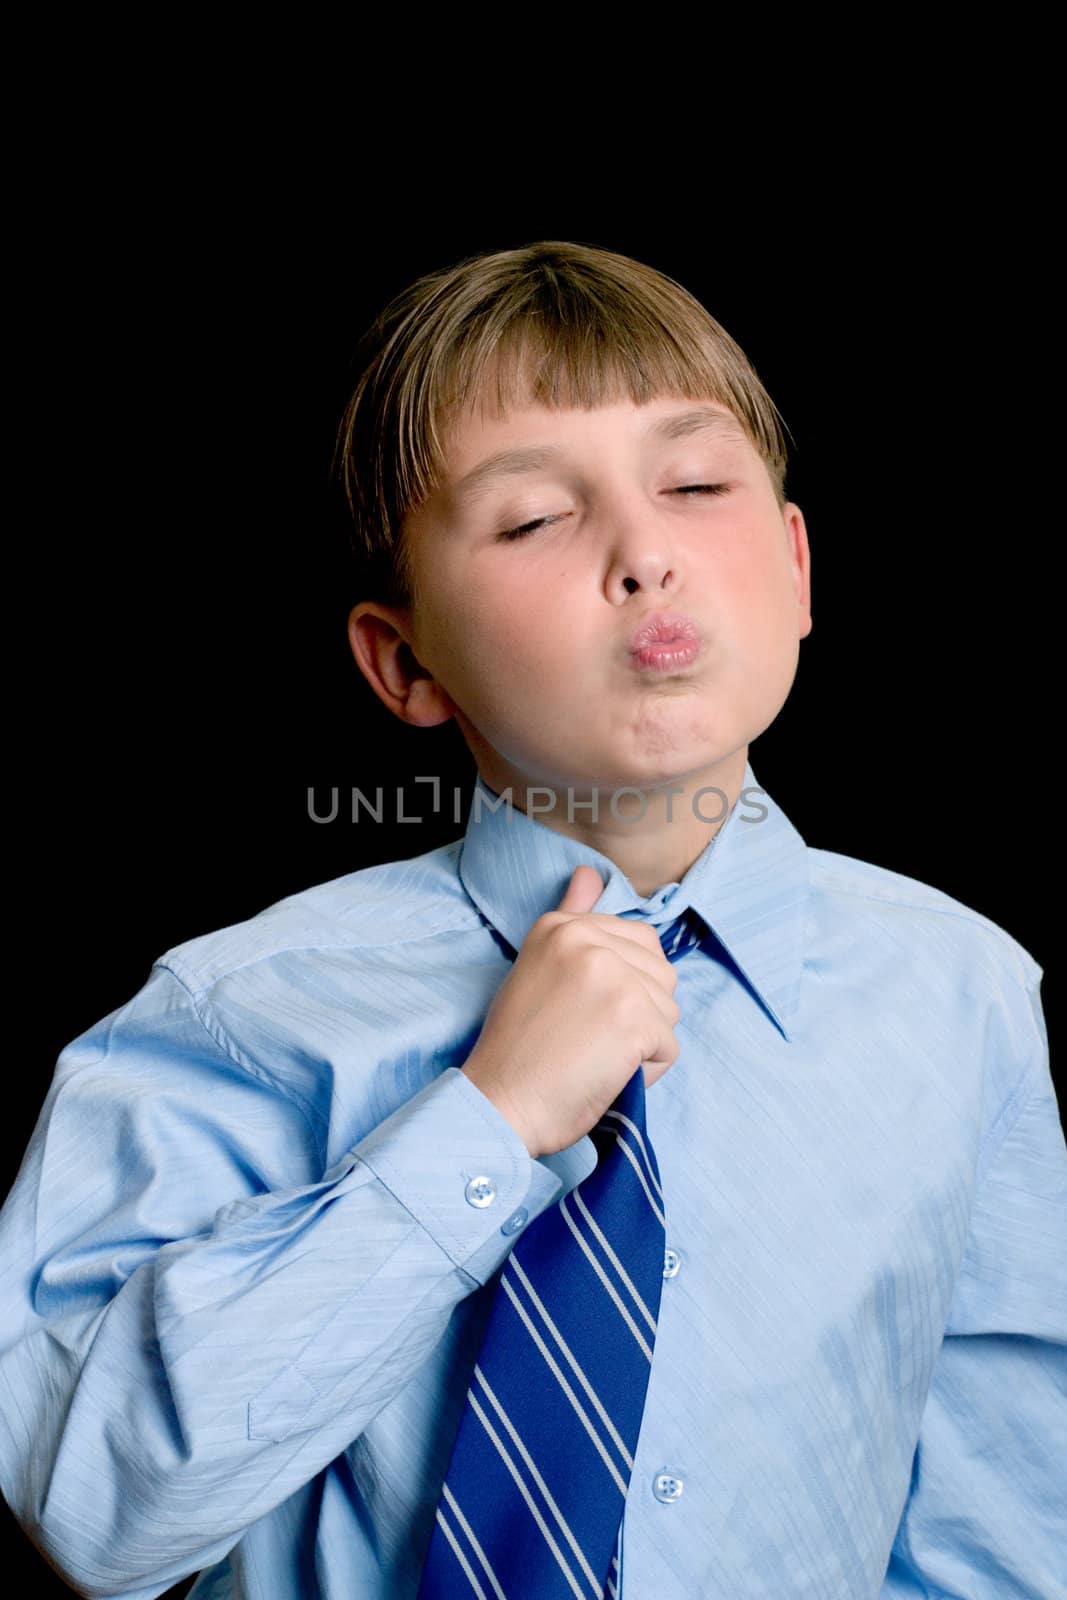 Schoolboy in a uniform adjusting tie